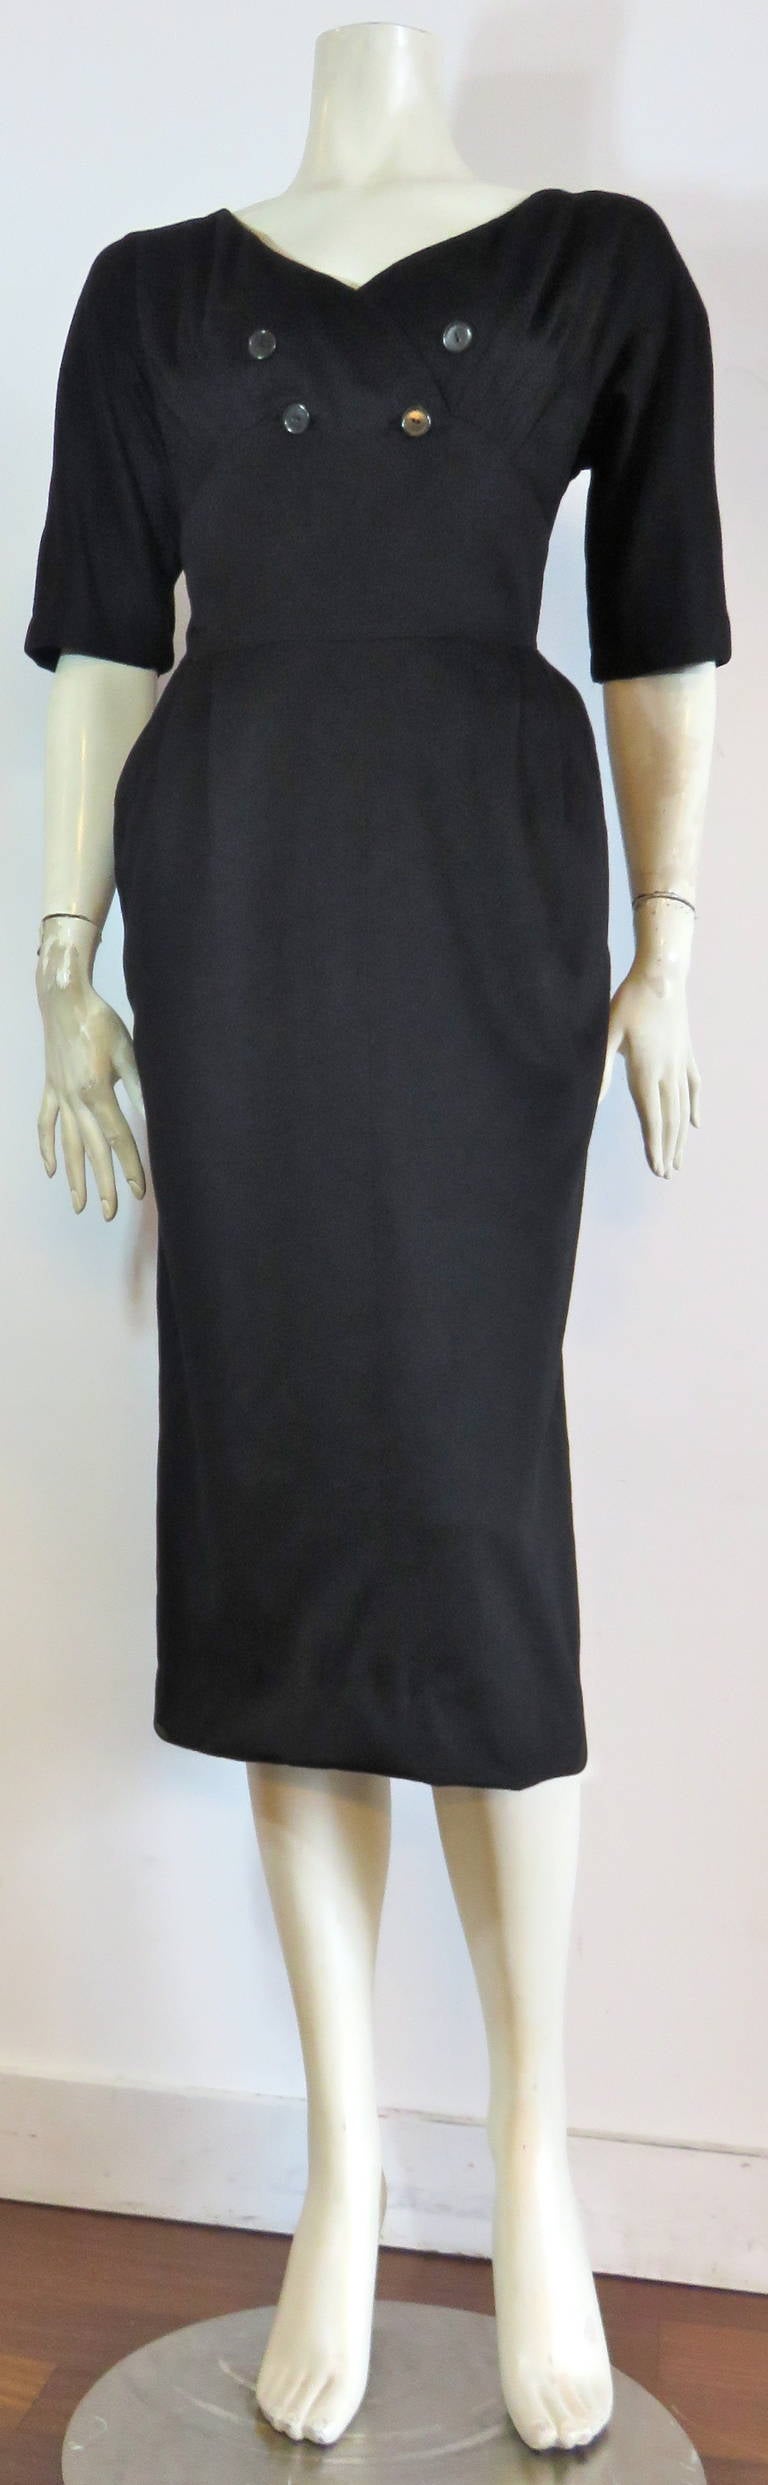 Women's 1950's HATTIE CARNEGIE Black wool cashmere dress For Sale